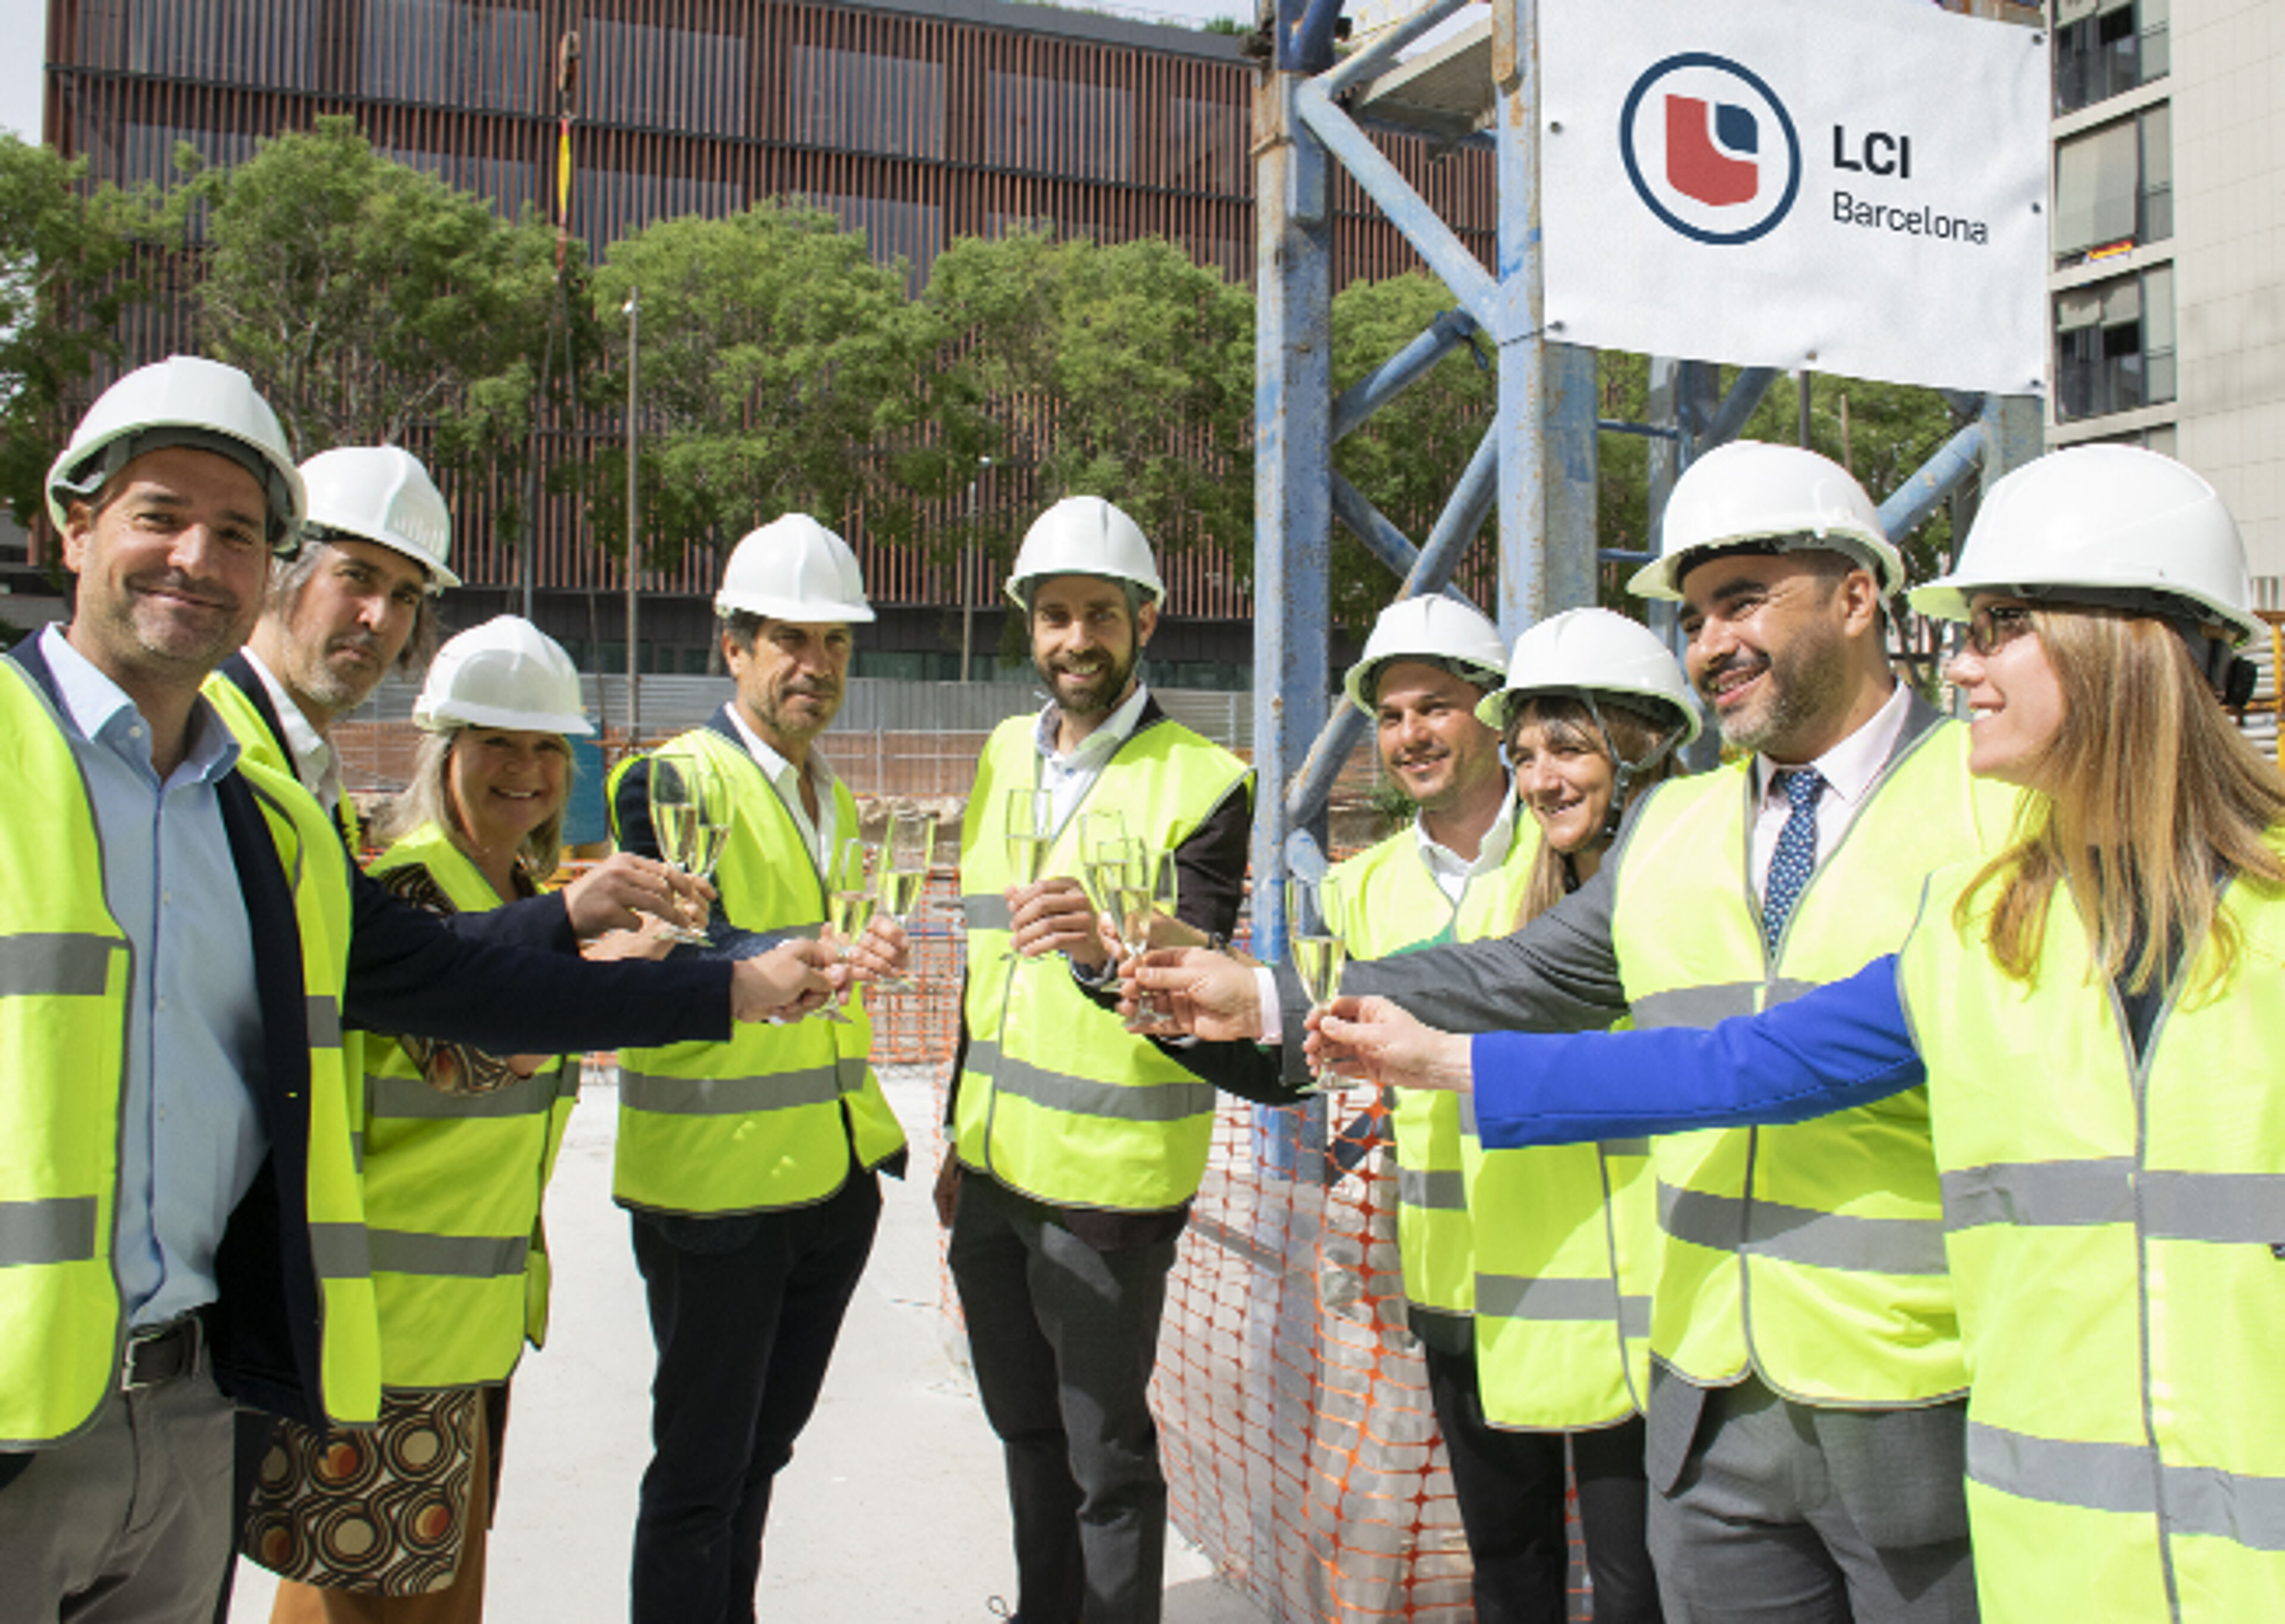  Grupo de profesionales con cascos y chalecos reflectantes celebrando con un brindis al aire libre en un sitio de construcción, cartel de LCI Barcelona al fondo.